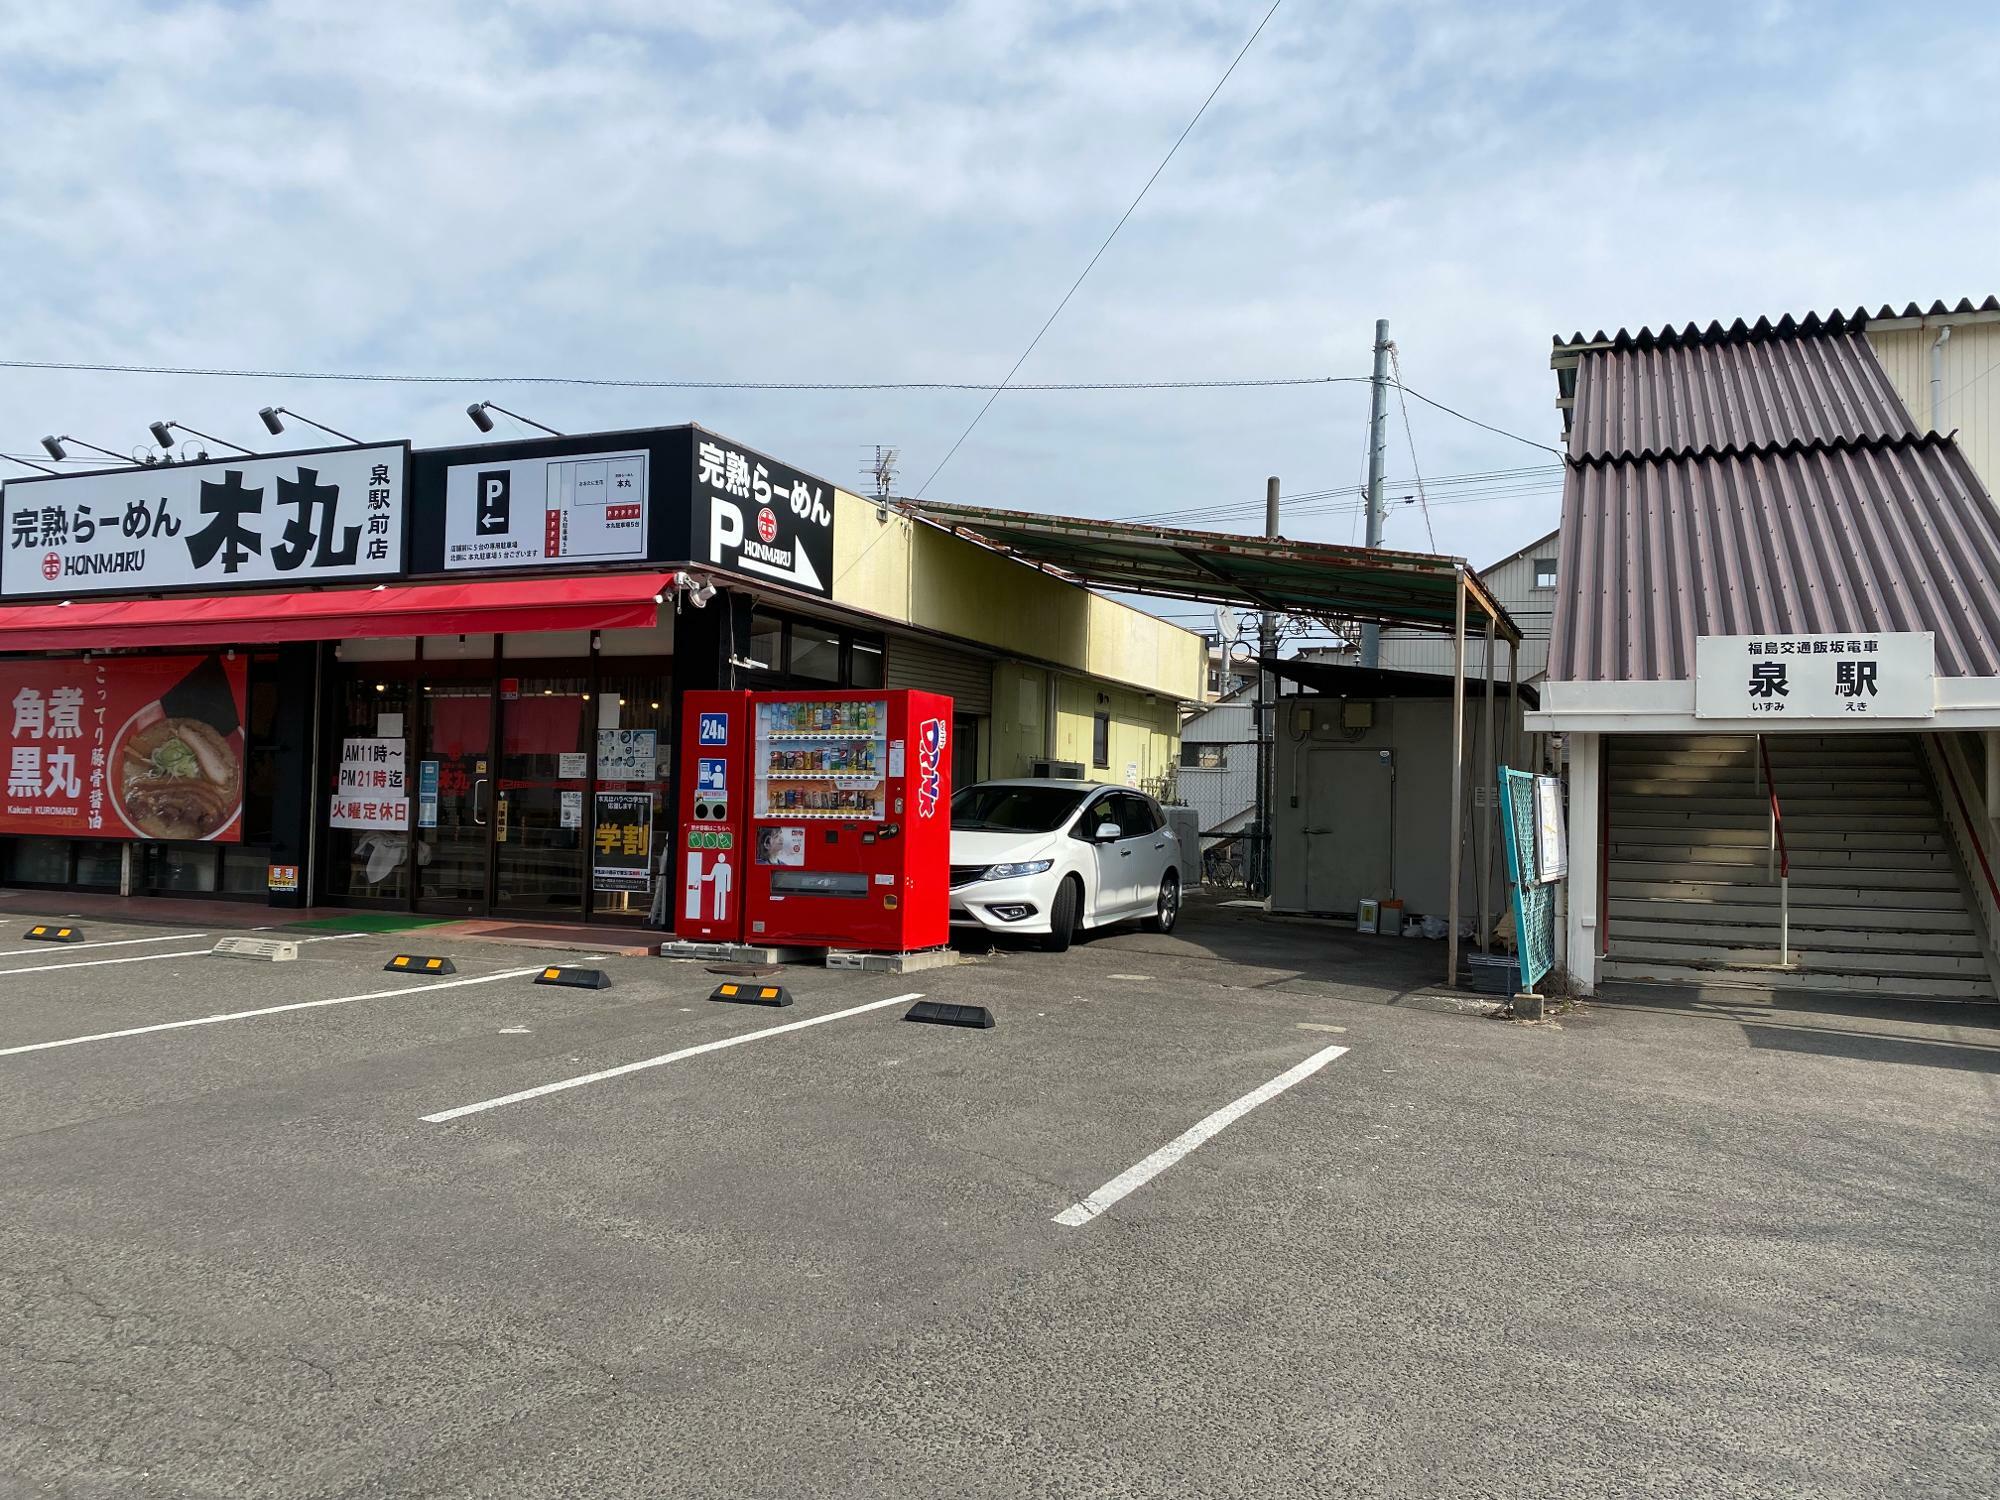 福島交通「飯坂電車」の「泉駅」と福島交通バスの「泉」バス停が目の前